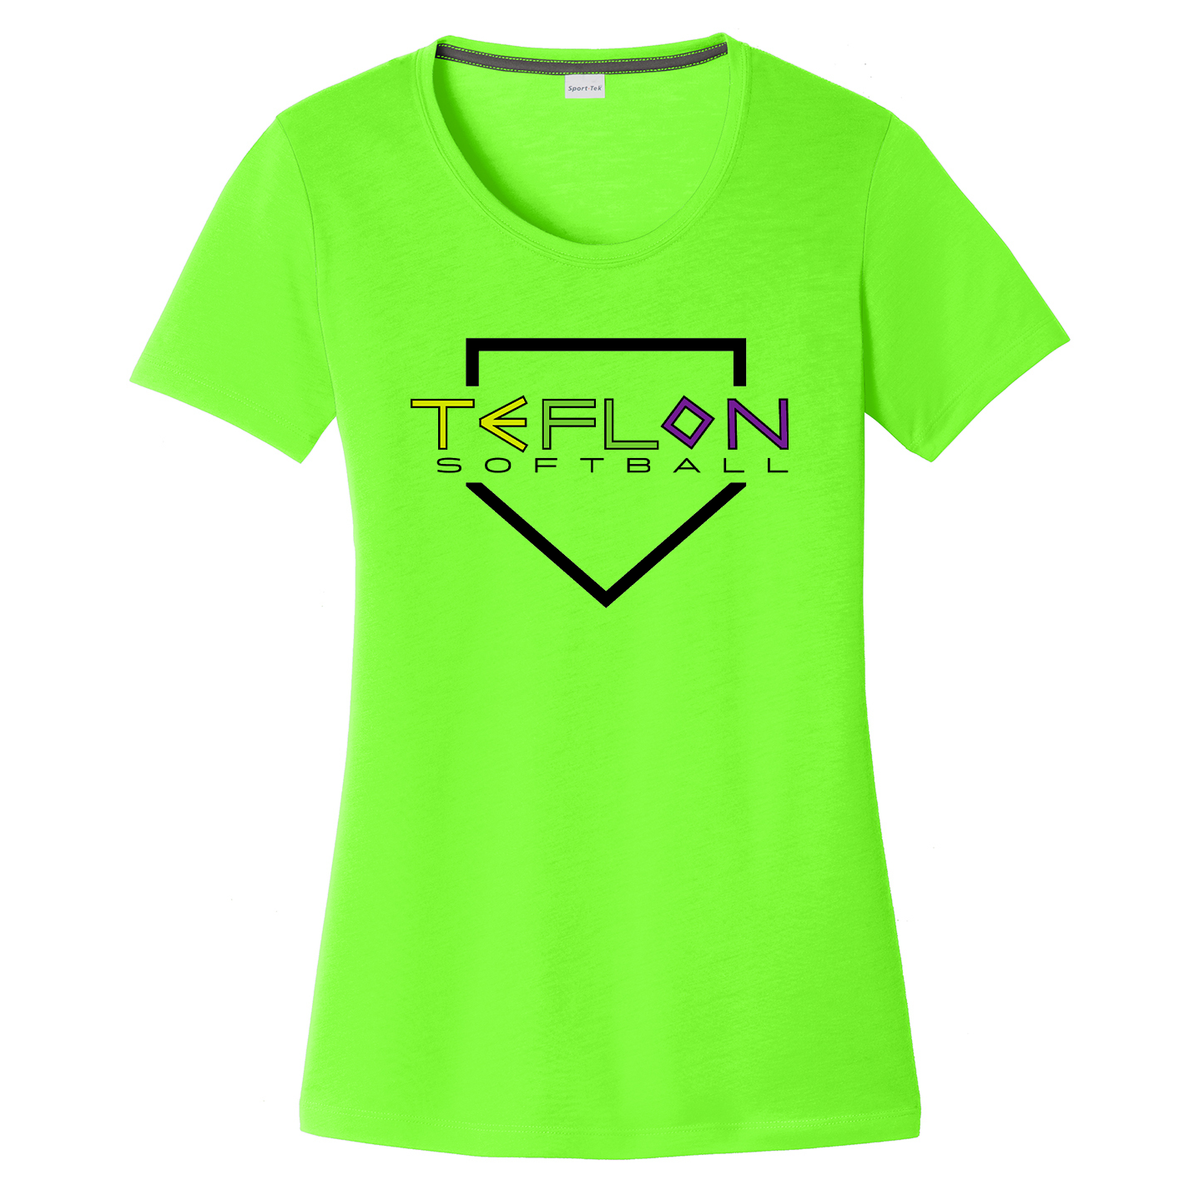 Team Teflon Softball Women's CottonTouch Performance T-Shirt